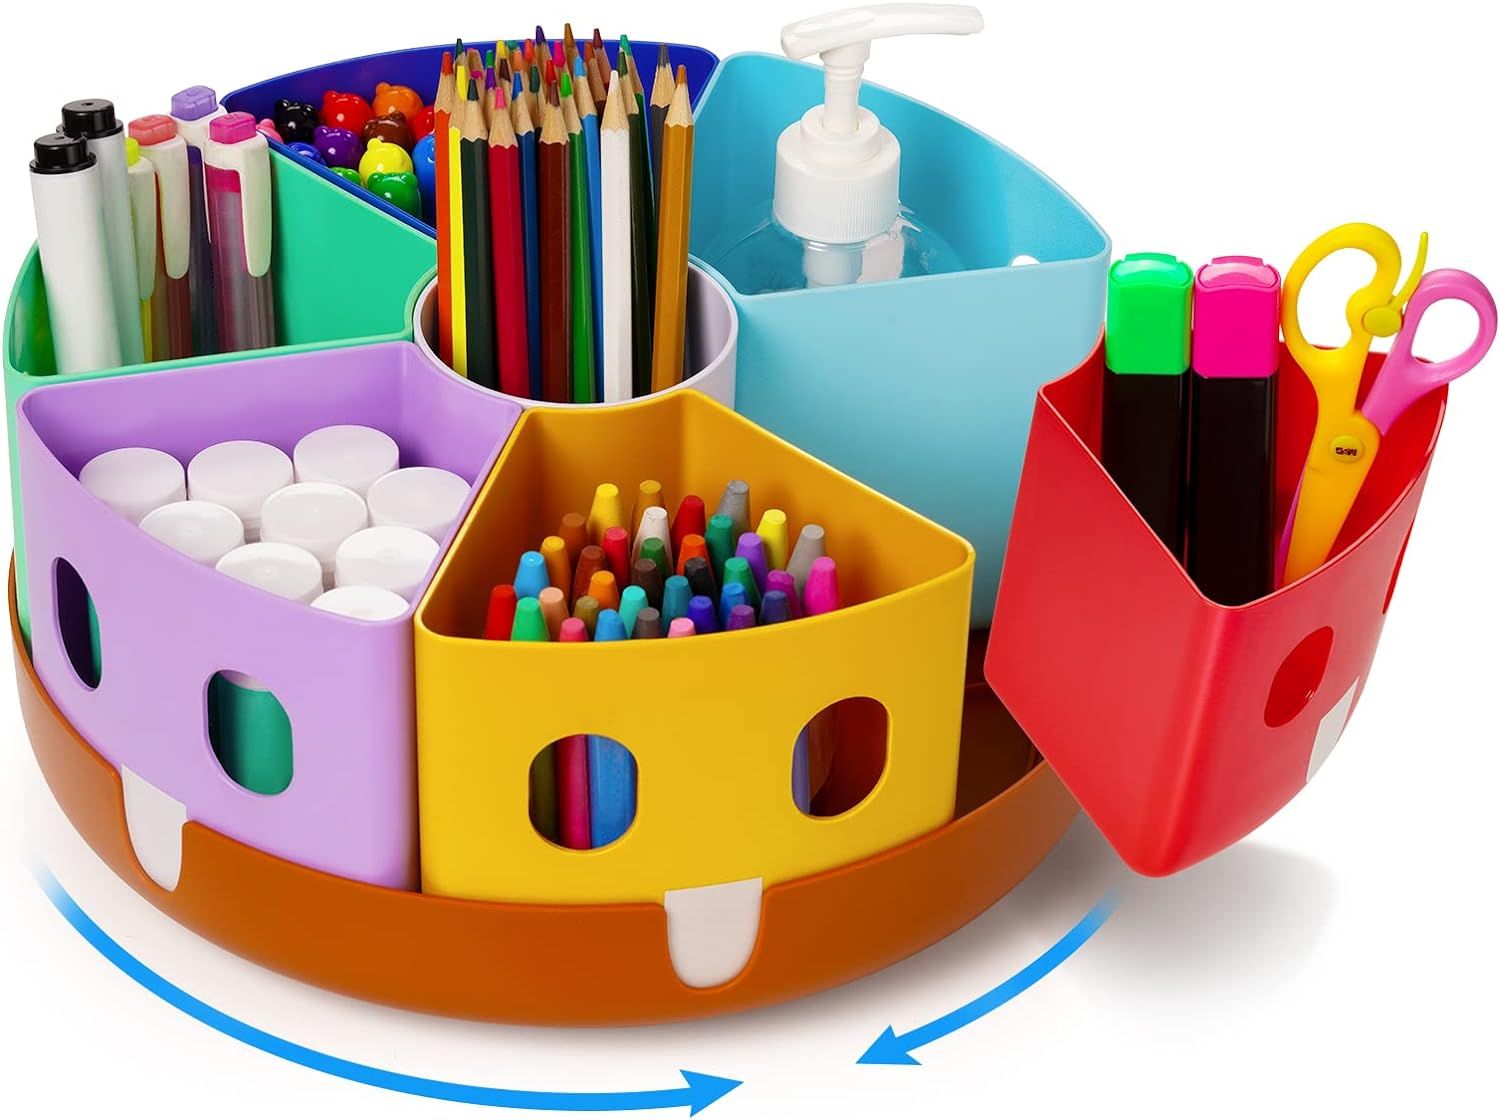 Funtopia Plastic Art Box for Kids, Multi-Purpose Portable Storage